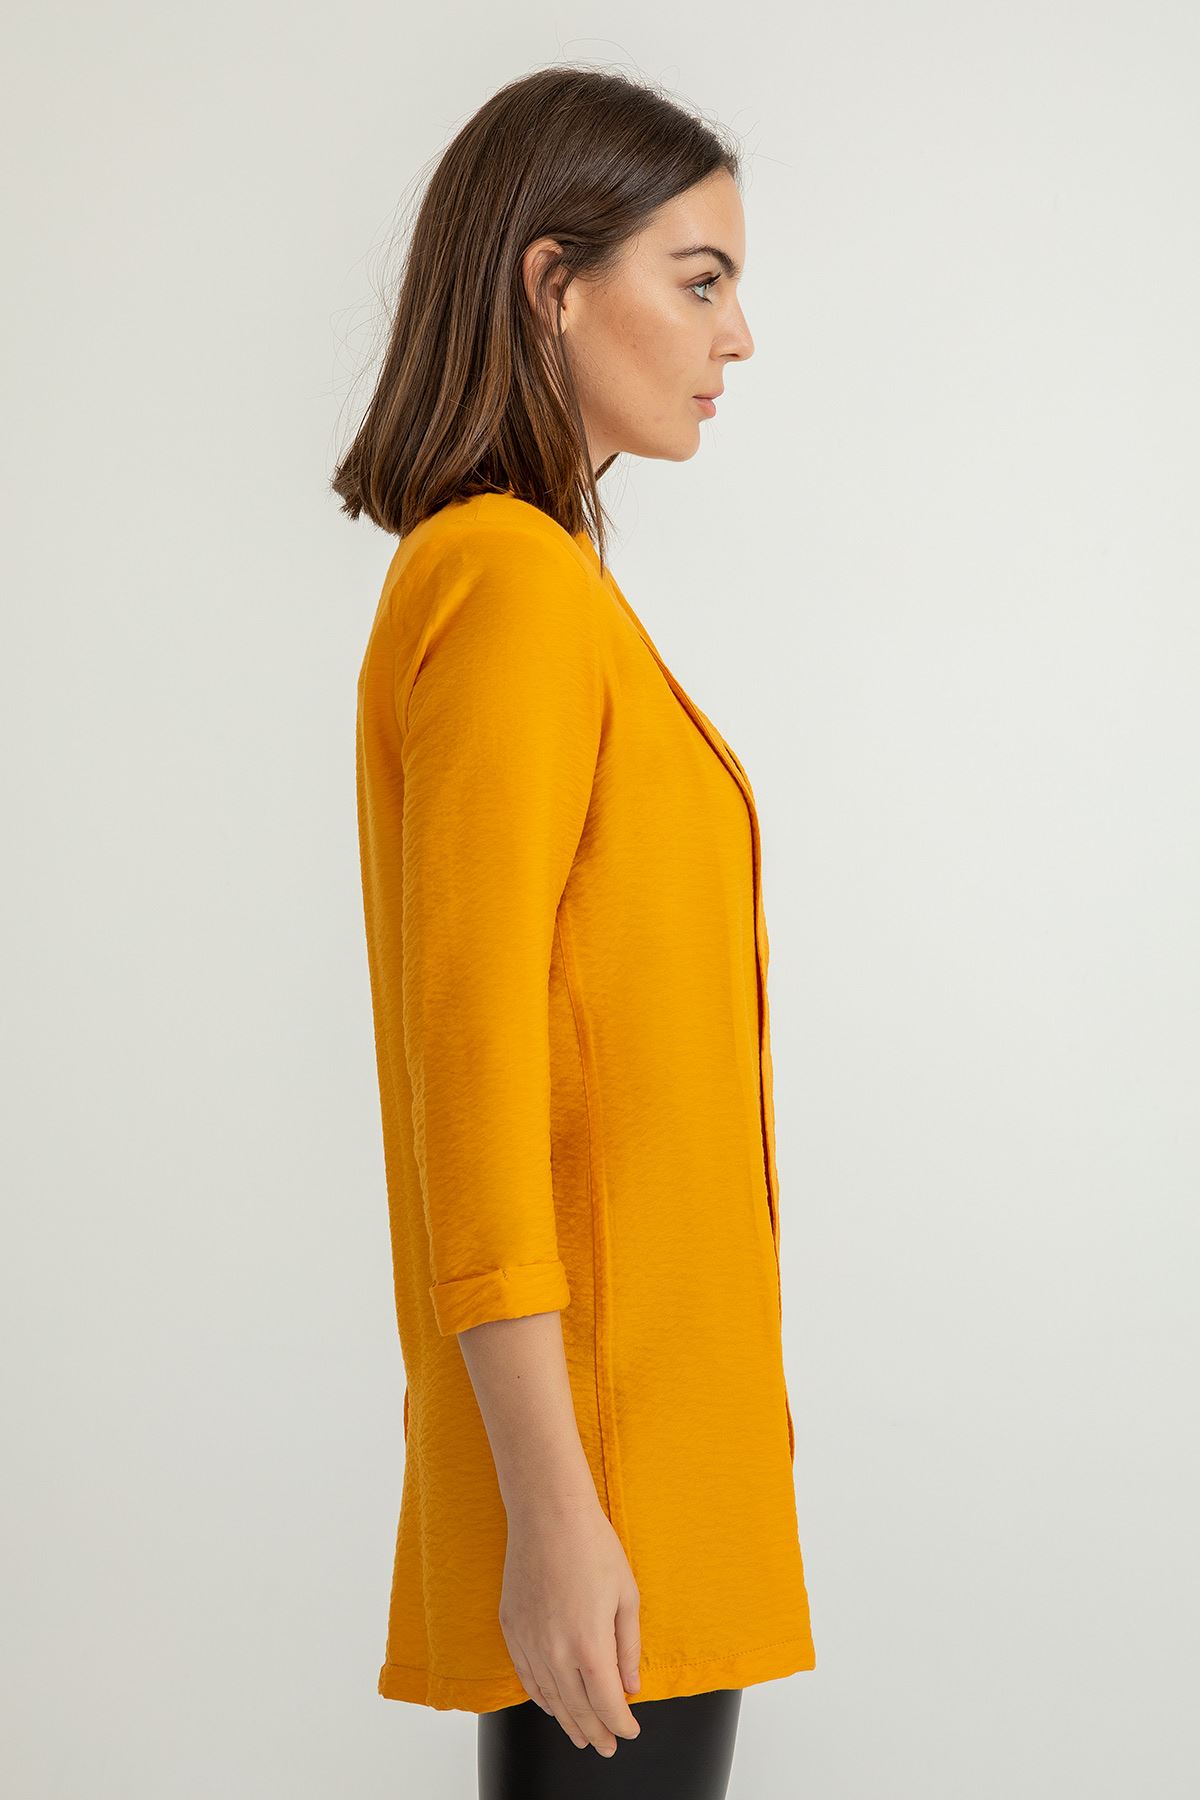 Aerobin Fabric Long Sleeve Shawl Collar Below Hip Comfy Women Jacket - Mustard